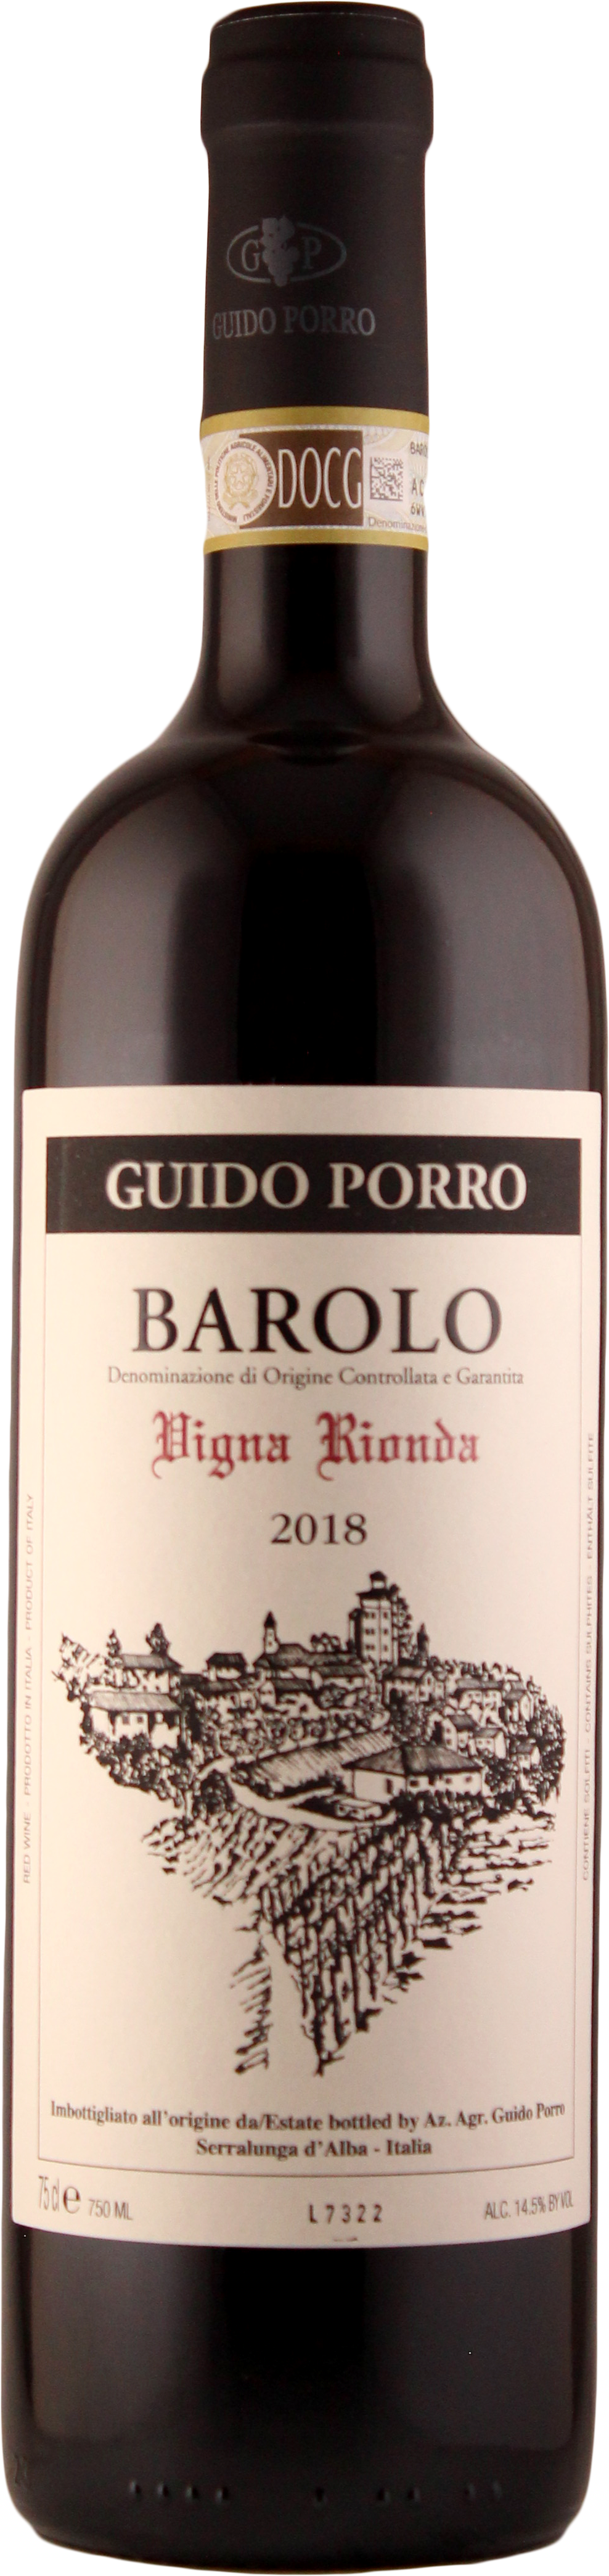 Barolo 'Vigna Rionda' 2018 - Guido Porro/Piemont